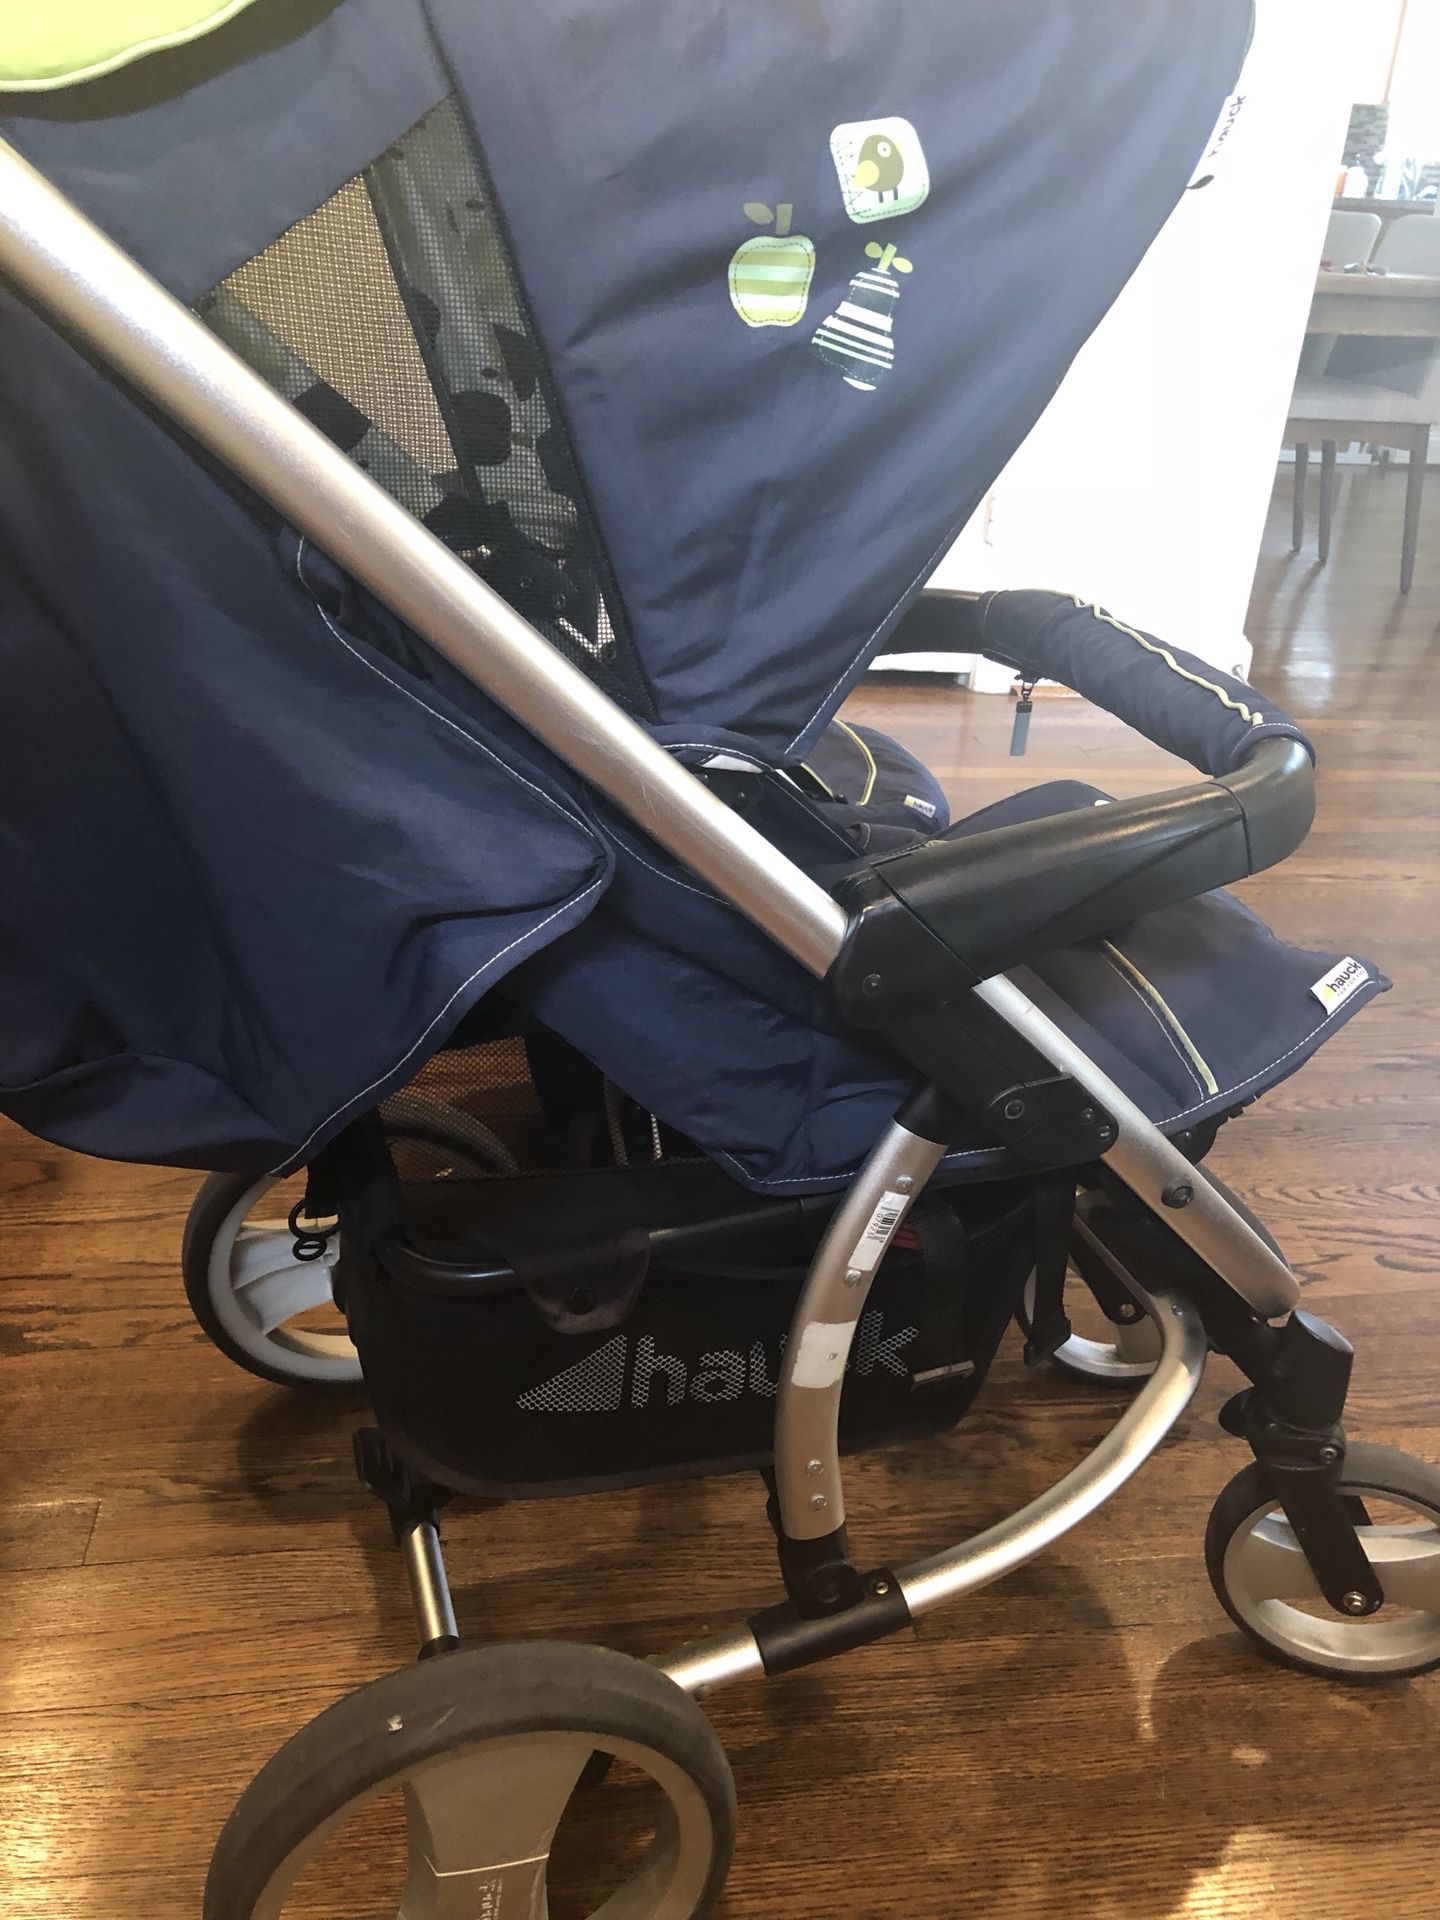 Stroller, bassinet, car seat and diaper bag